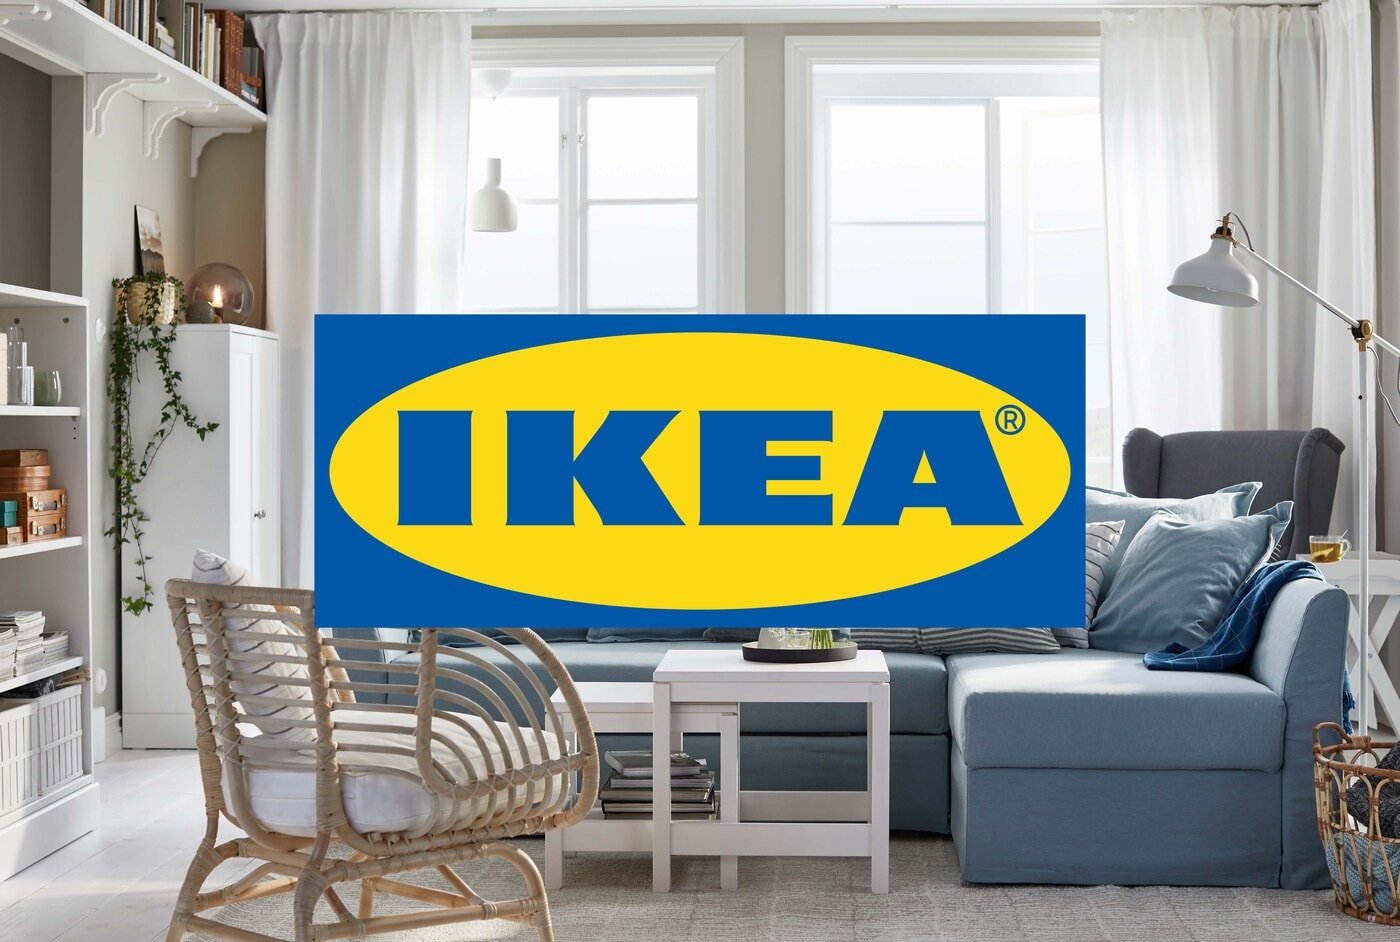 The IKEA logo and design